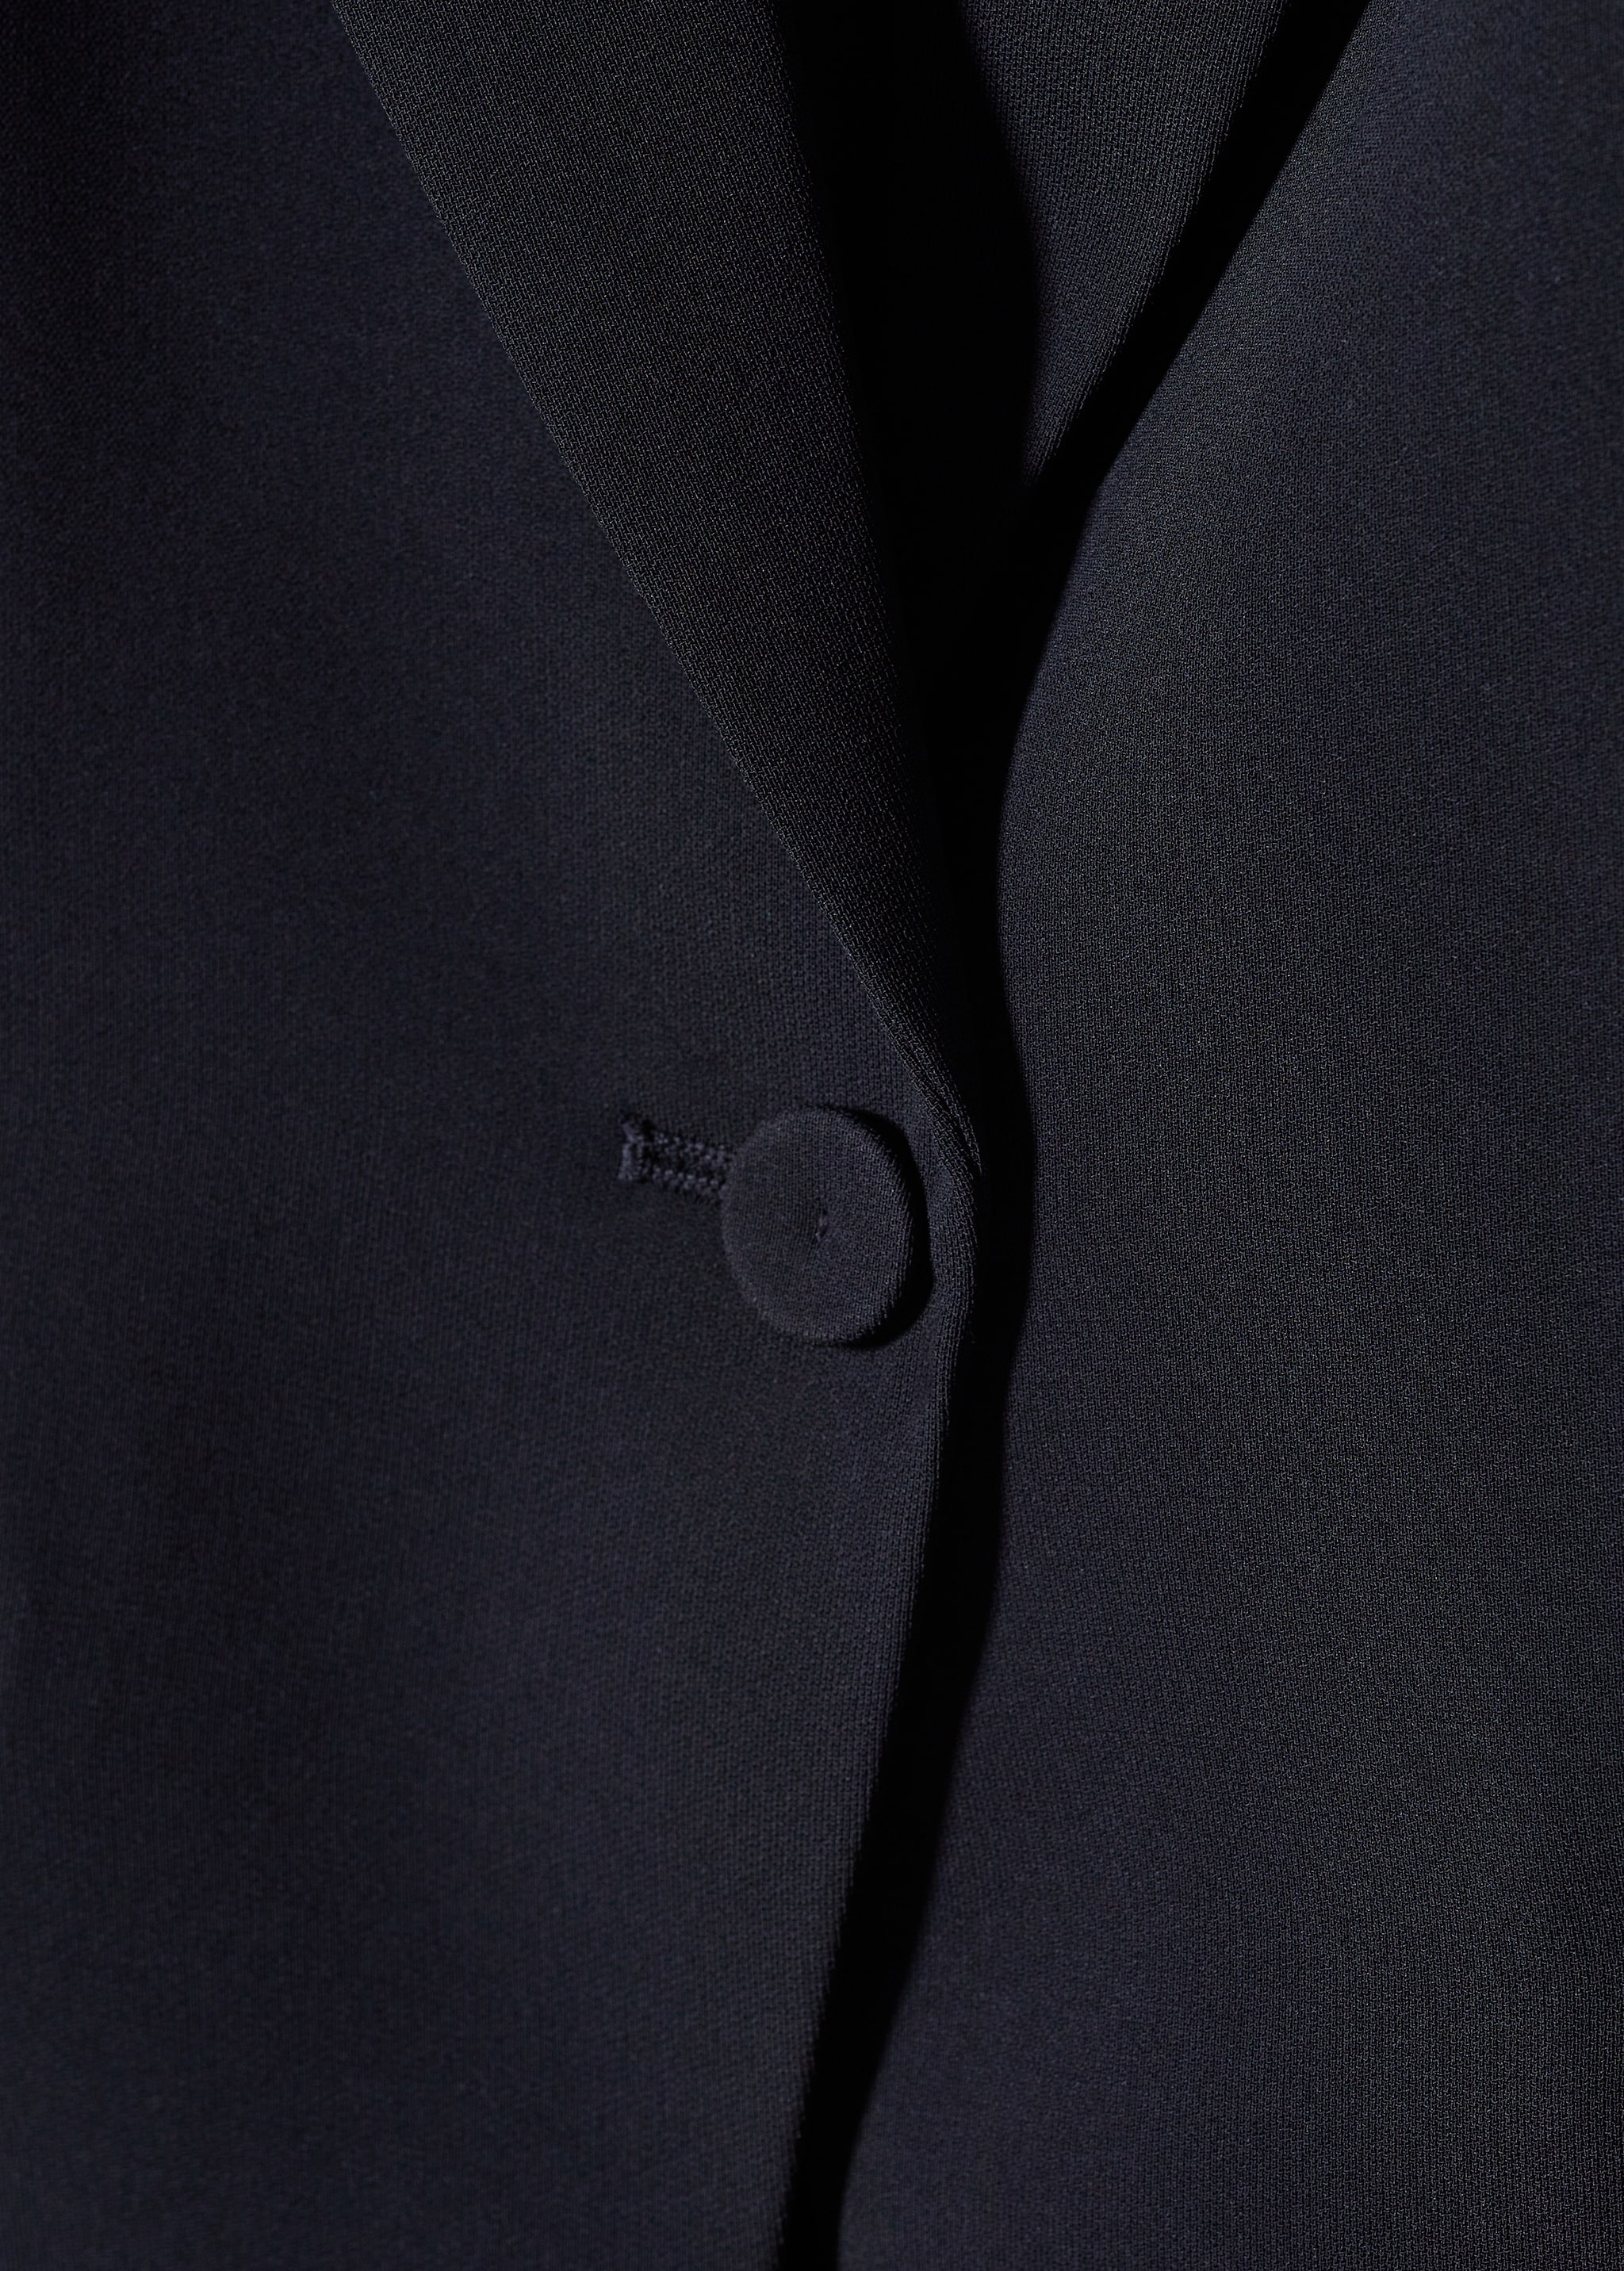 Suit jacket with buttons  - Detaliu al articolului 8